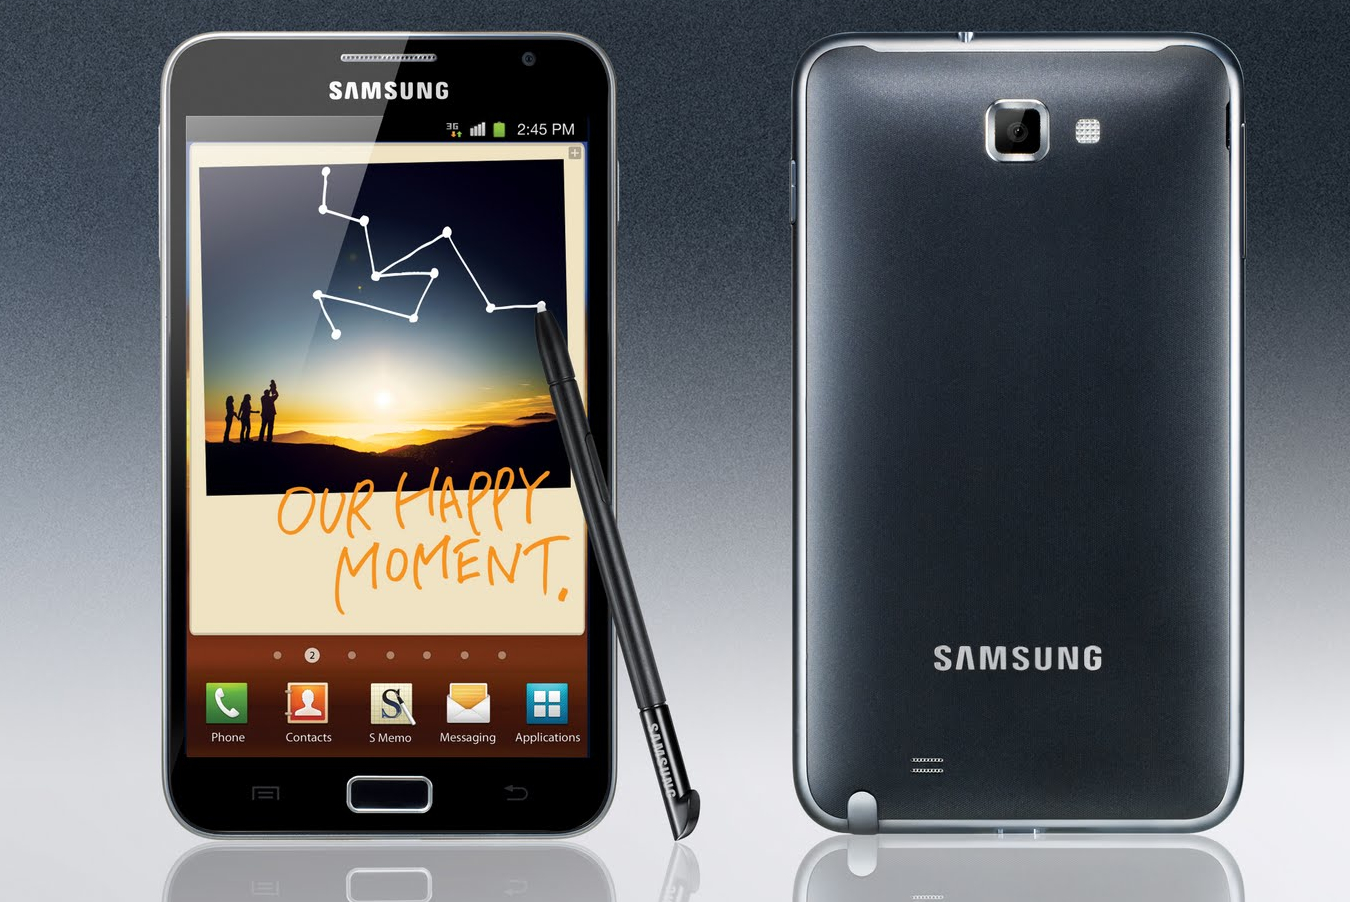  طرح اصلی Samsung Galaxy Note با اندروید 4